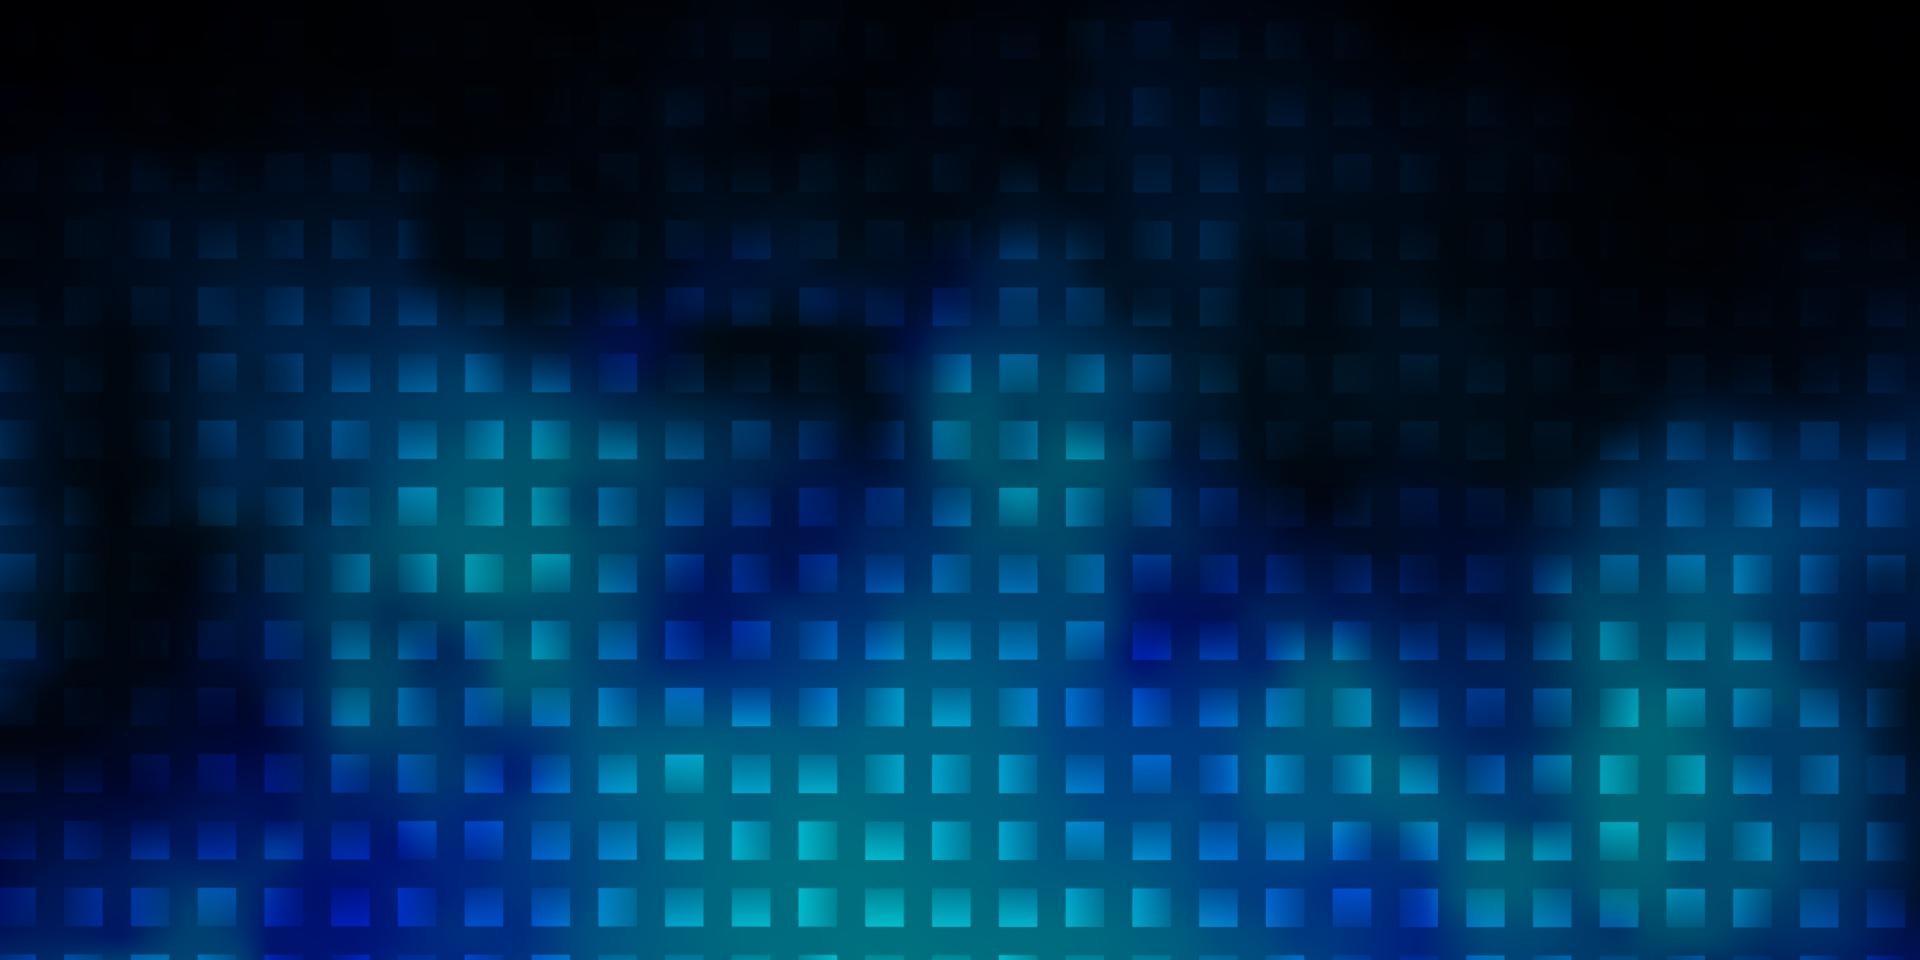 modelo de vetor azul escuro com retângulos.